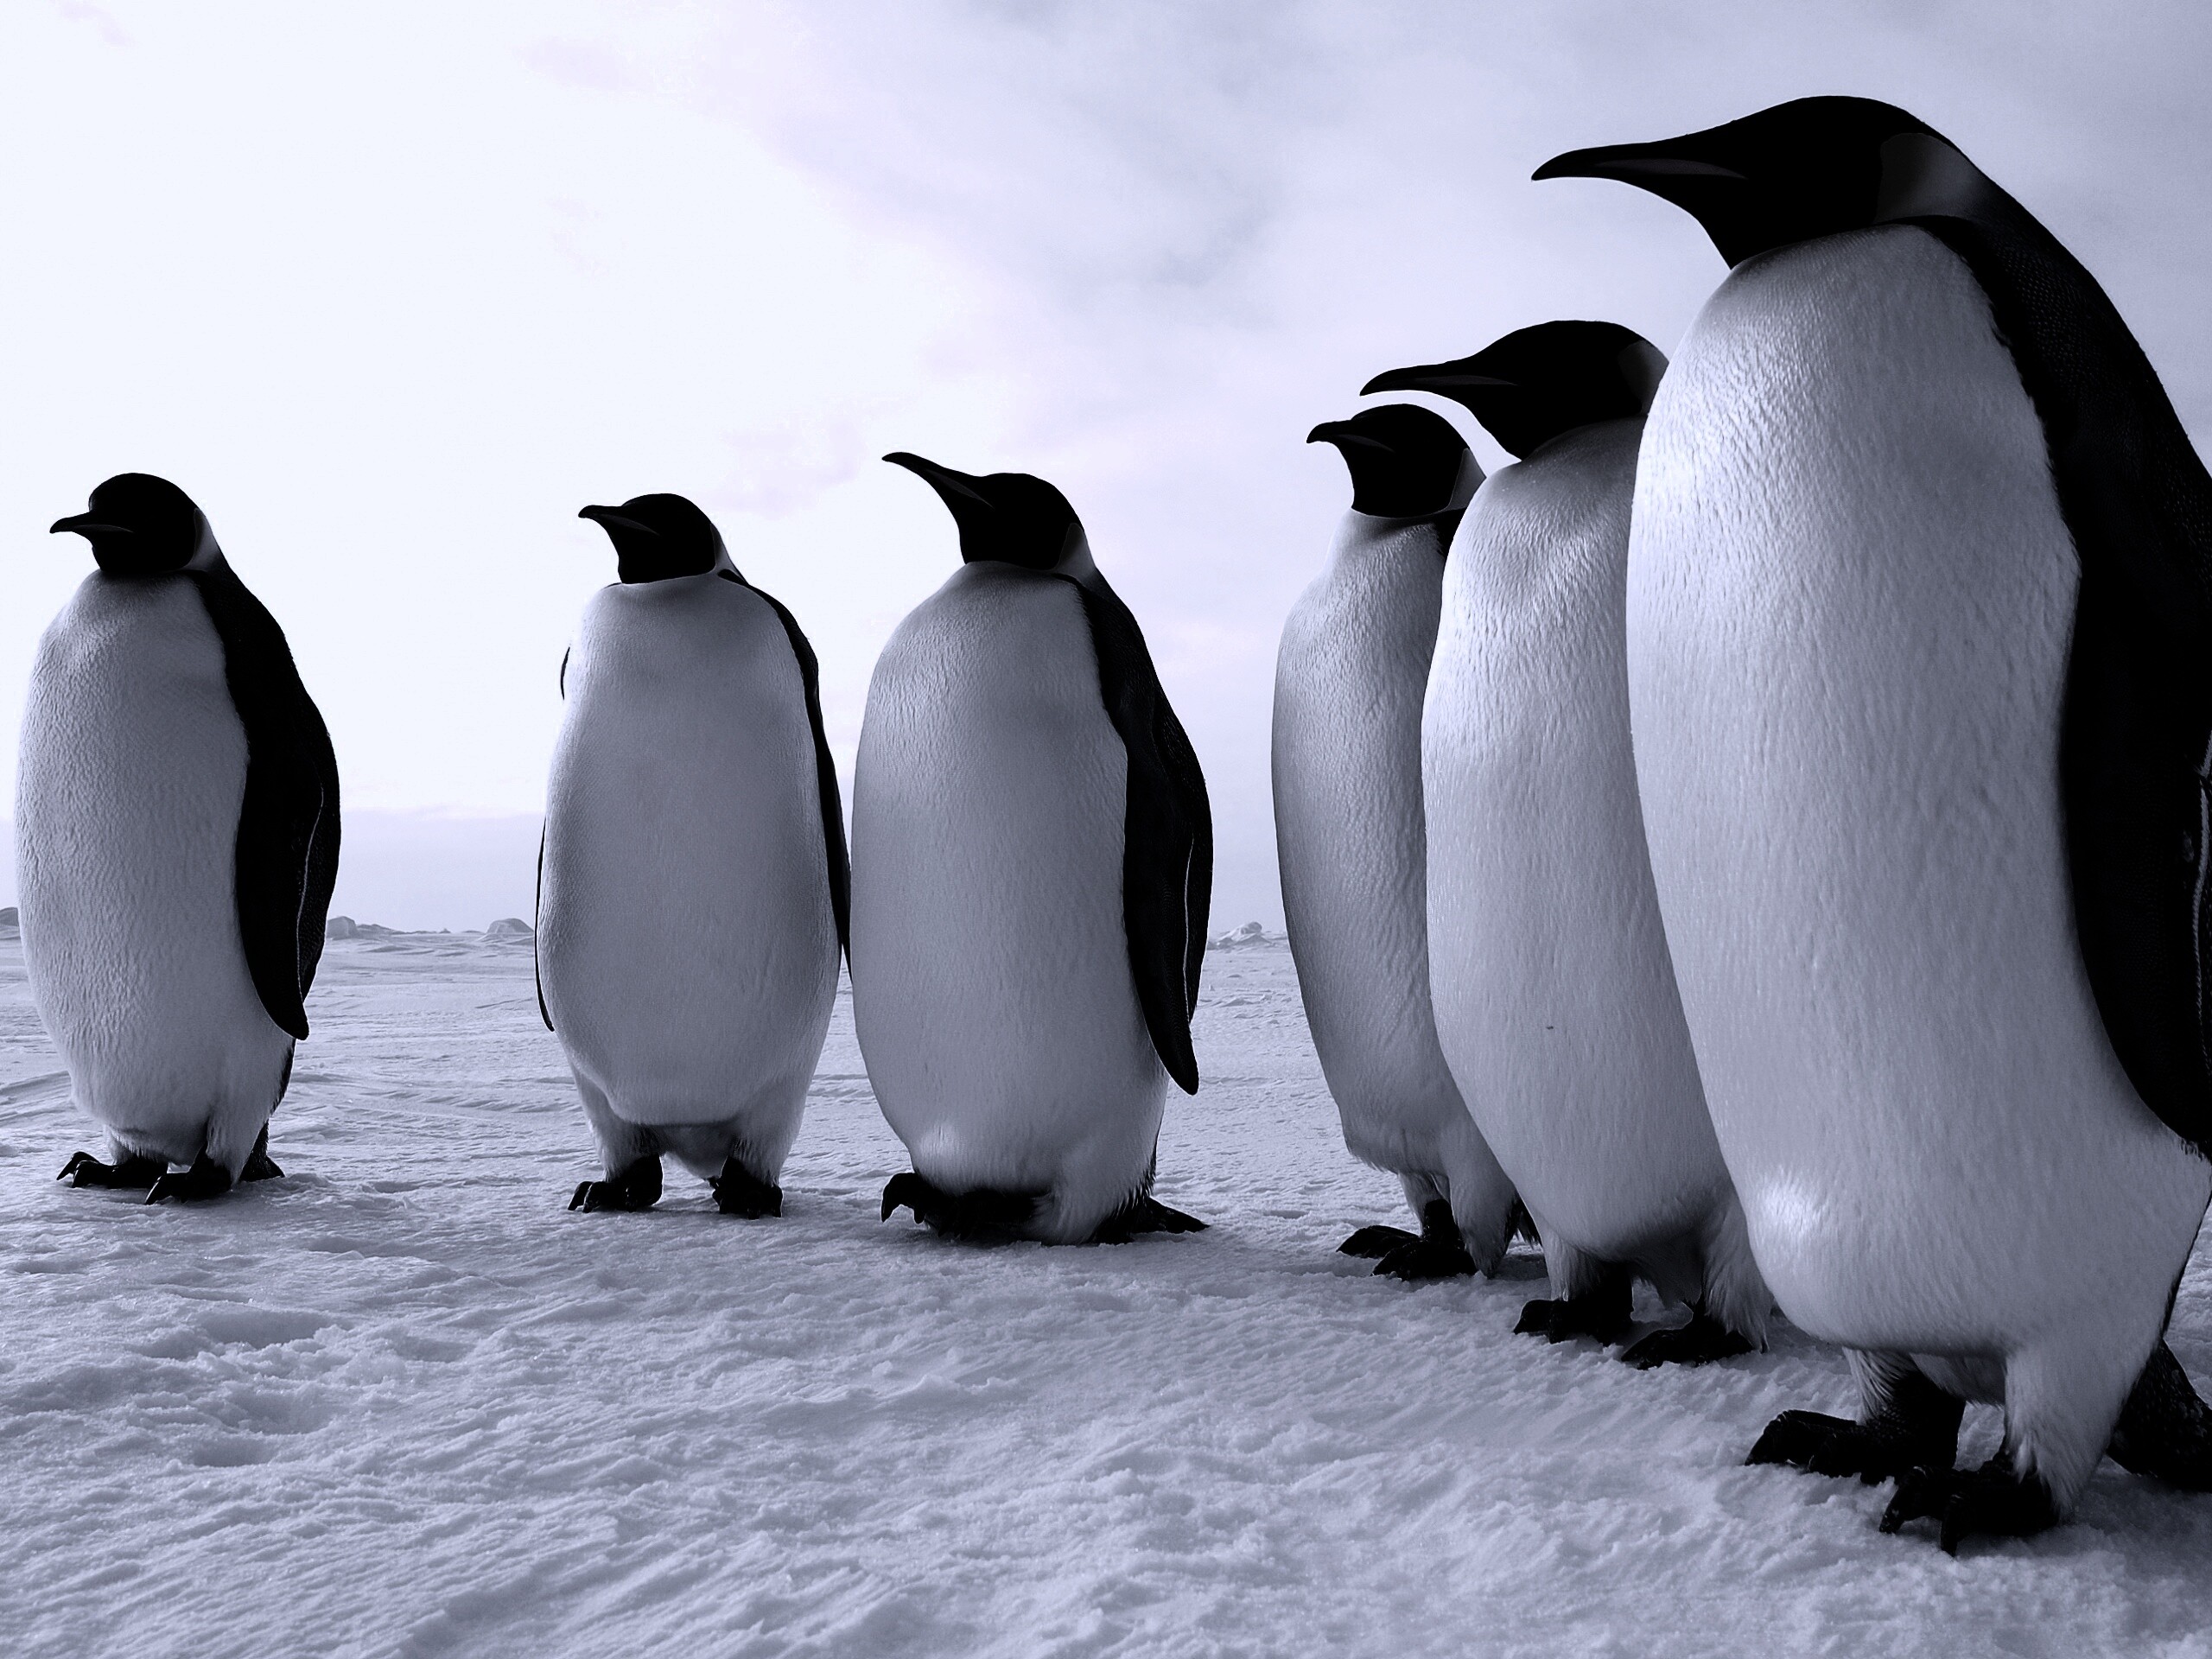 Слет пингвинов обои